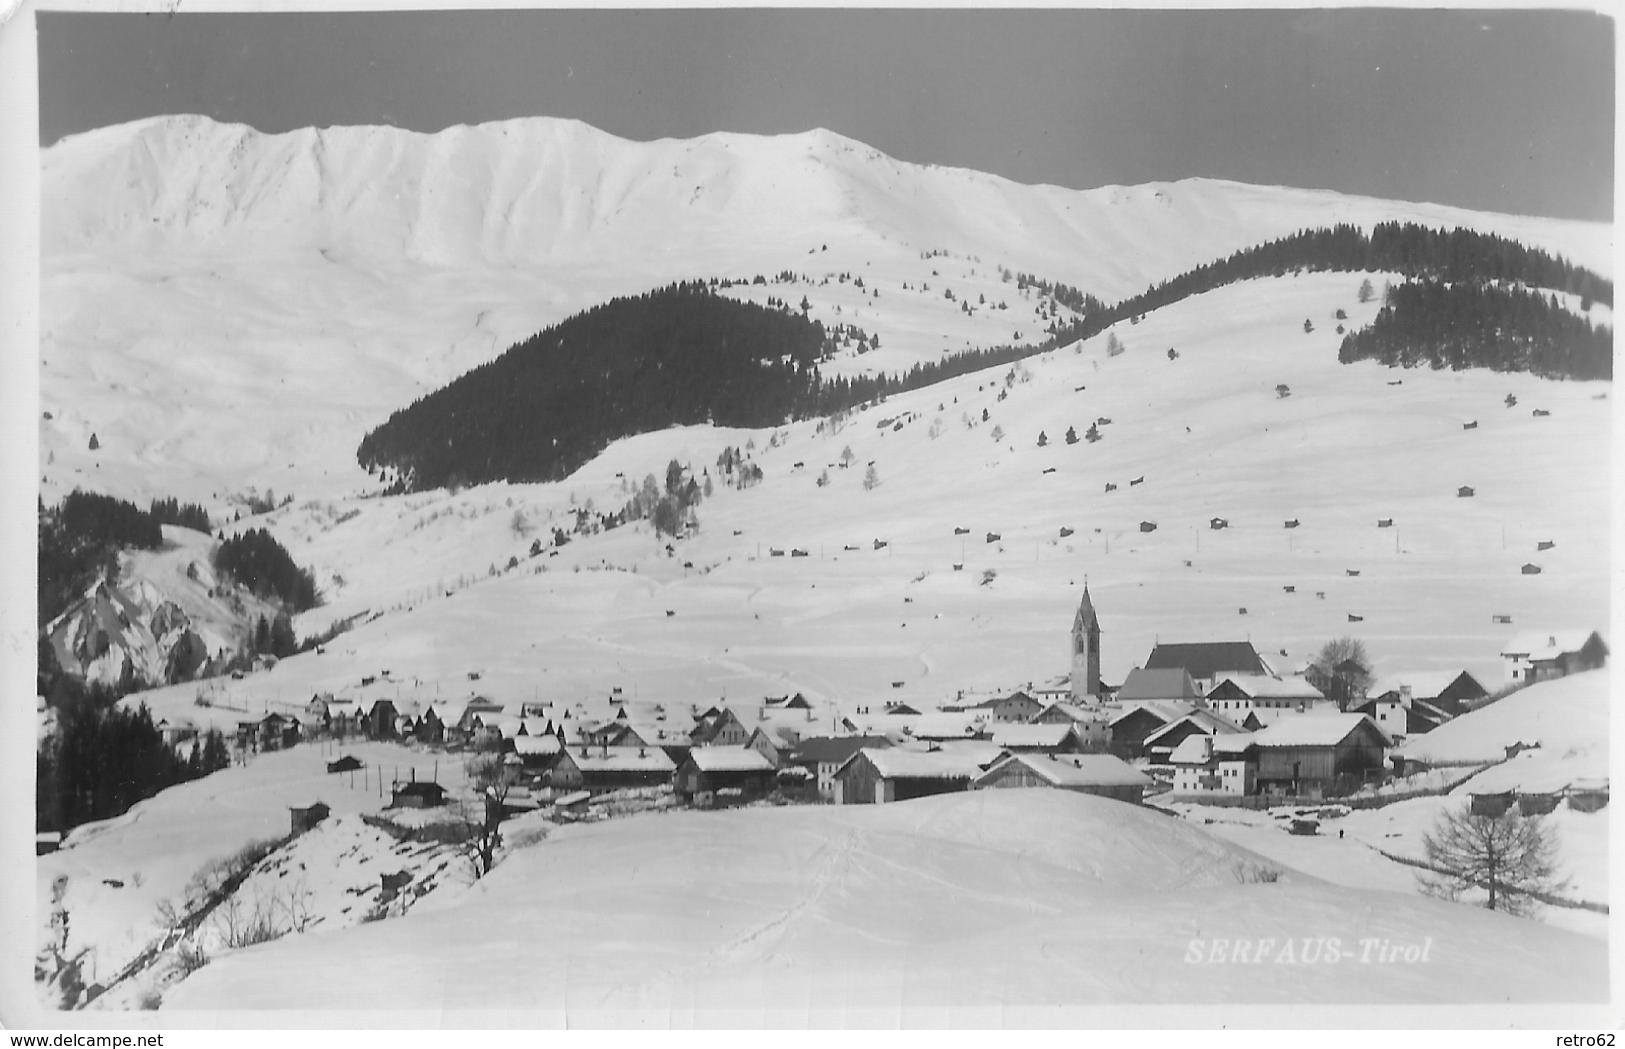 SERFAUS &rarr; Gemeinde Im Tirol, Winteraufnahme 1962 - Landeck